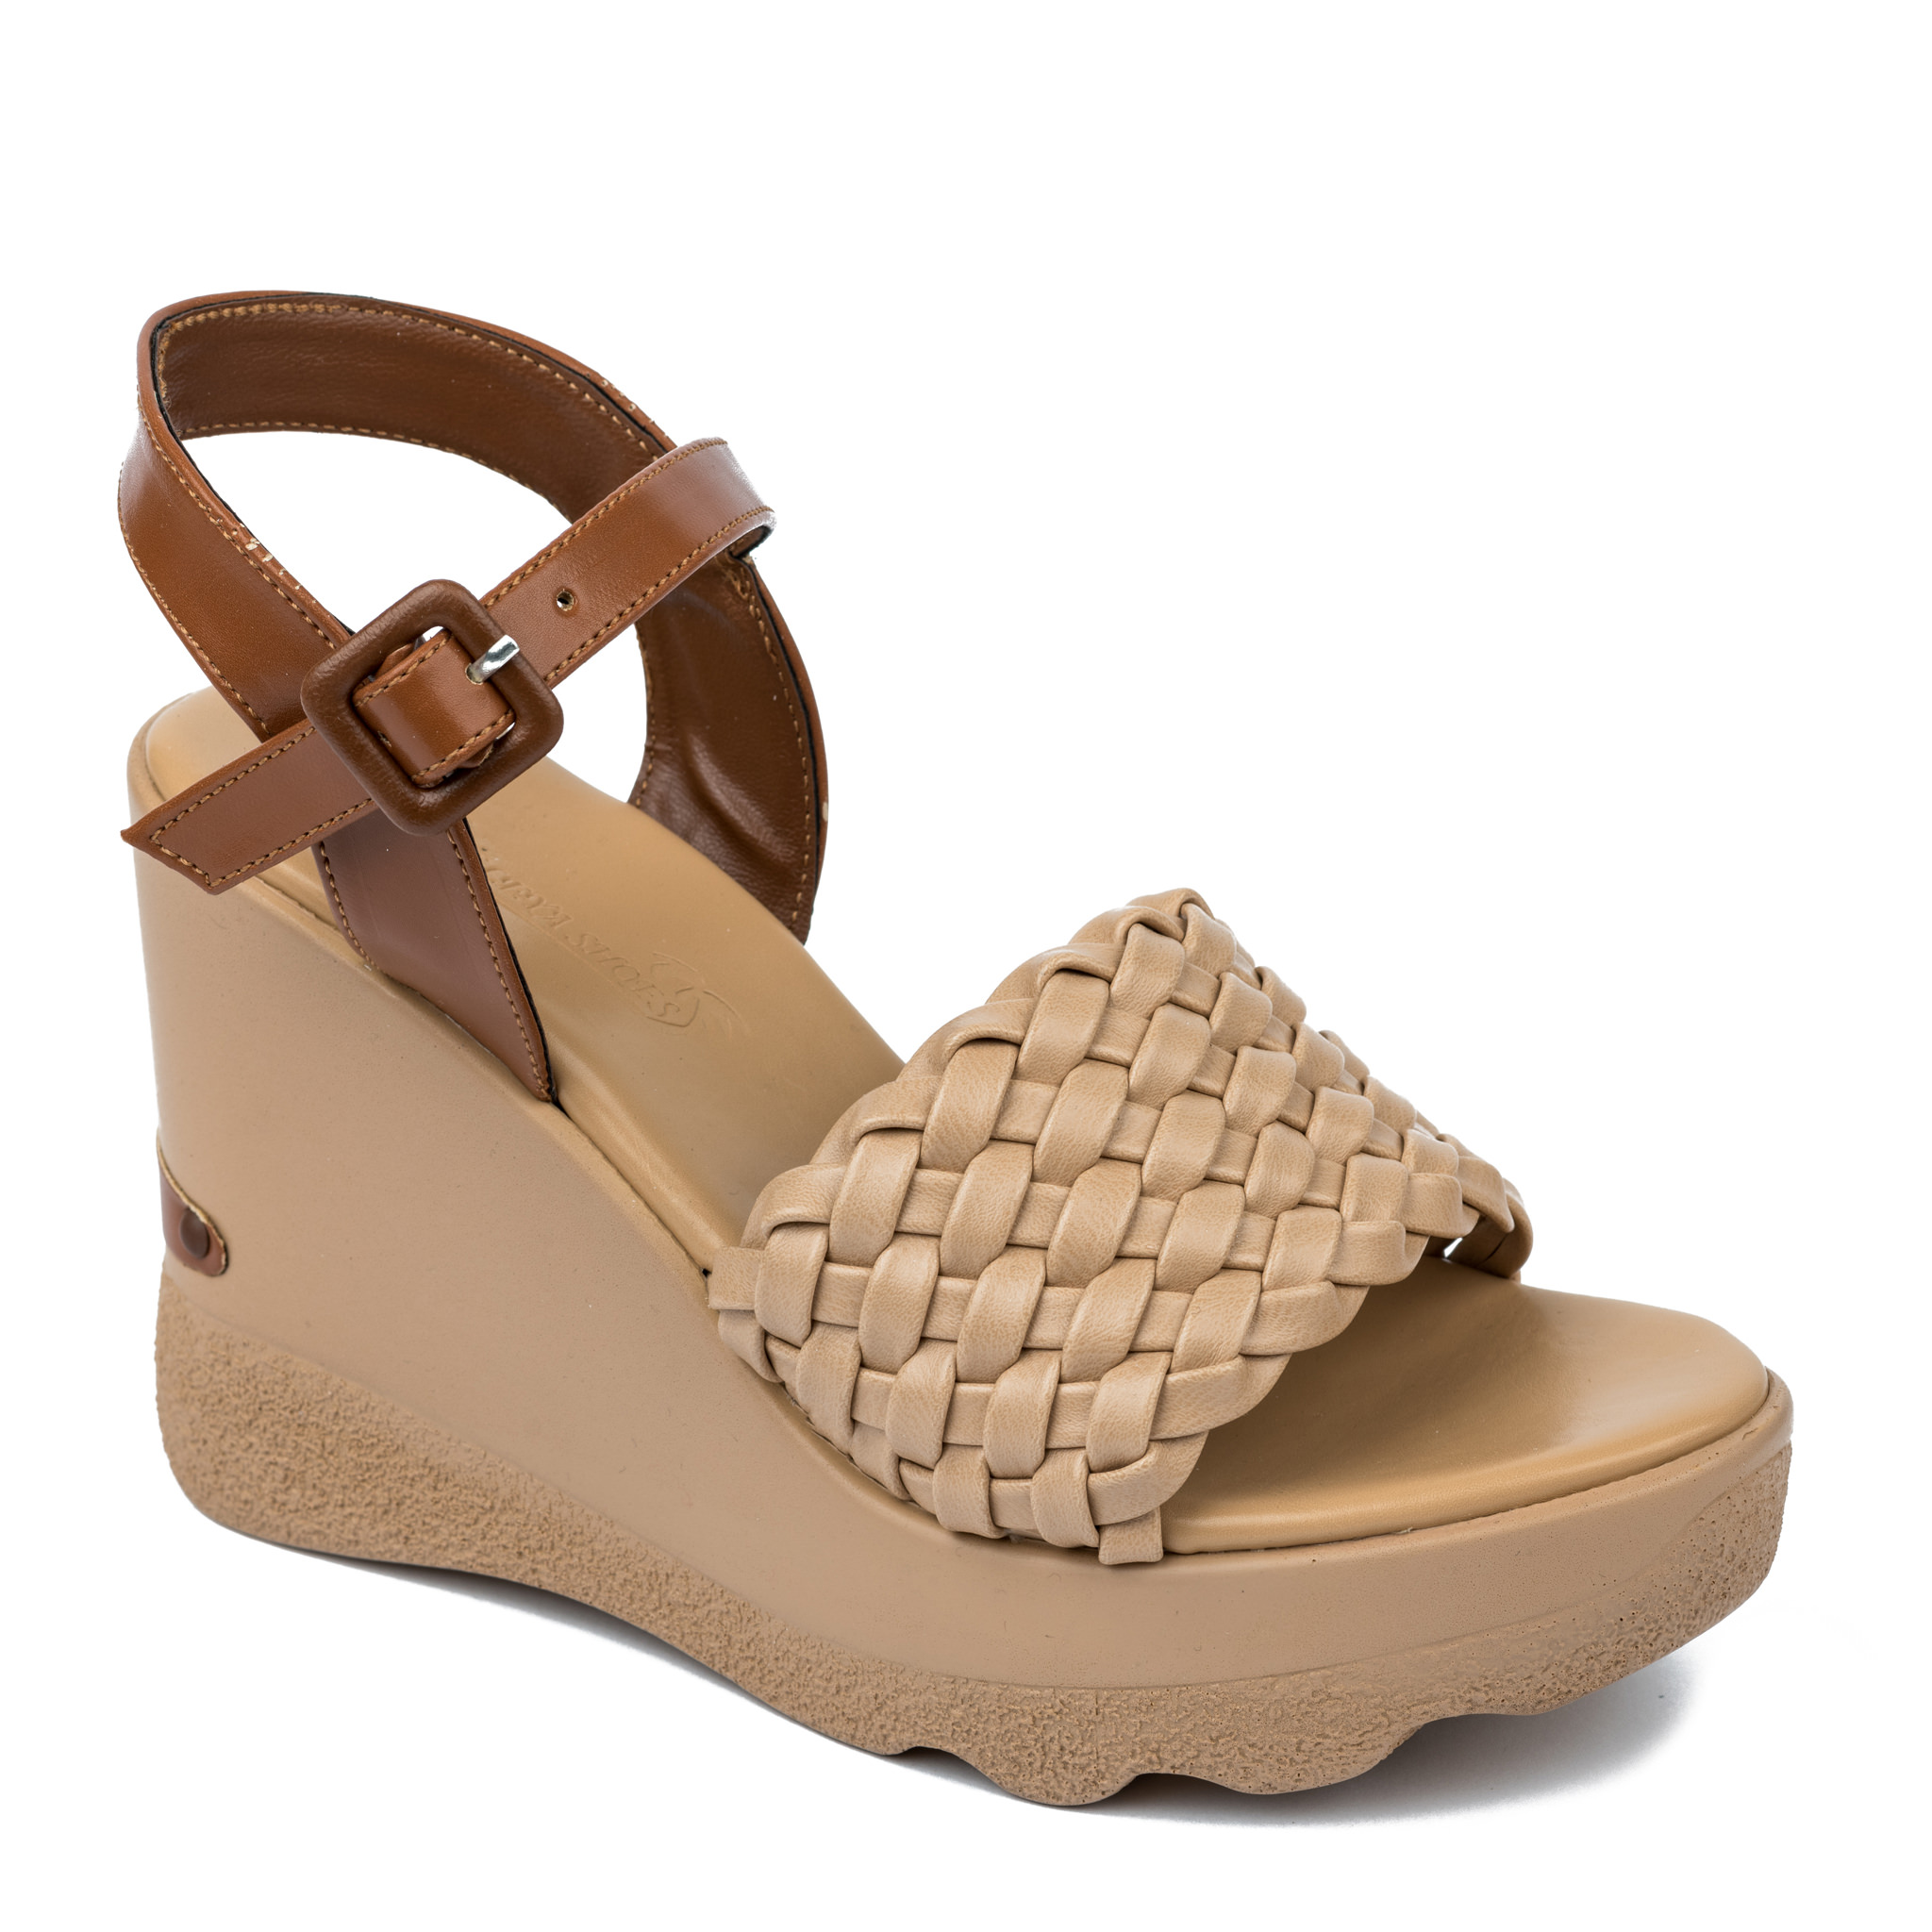 Women sandals A324 - BEIGE